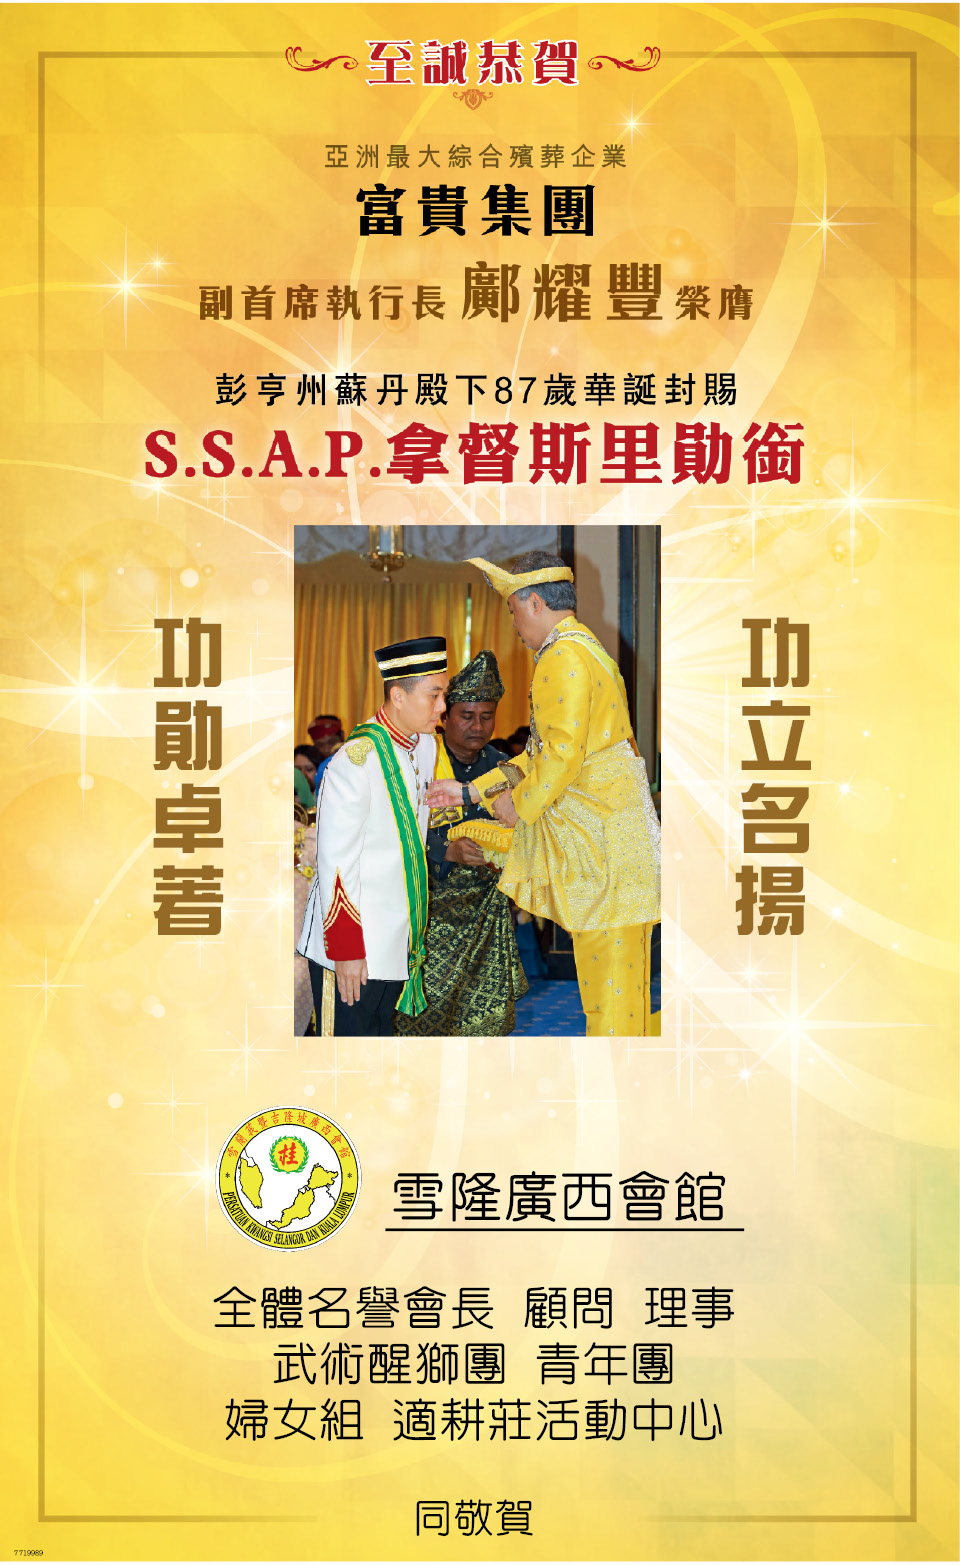 鄺耀豐先生榮膺彭亨州蘇丹殿下封賜SSAP拿督斯里勳銜誌慶